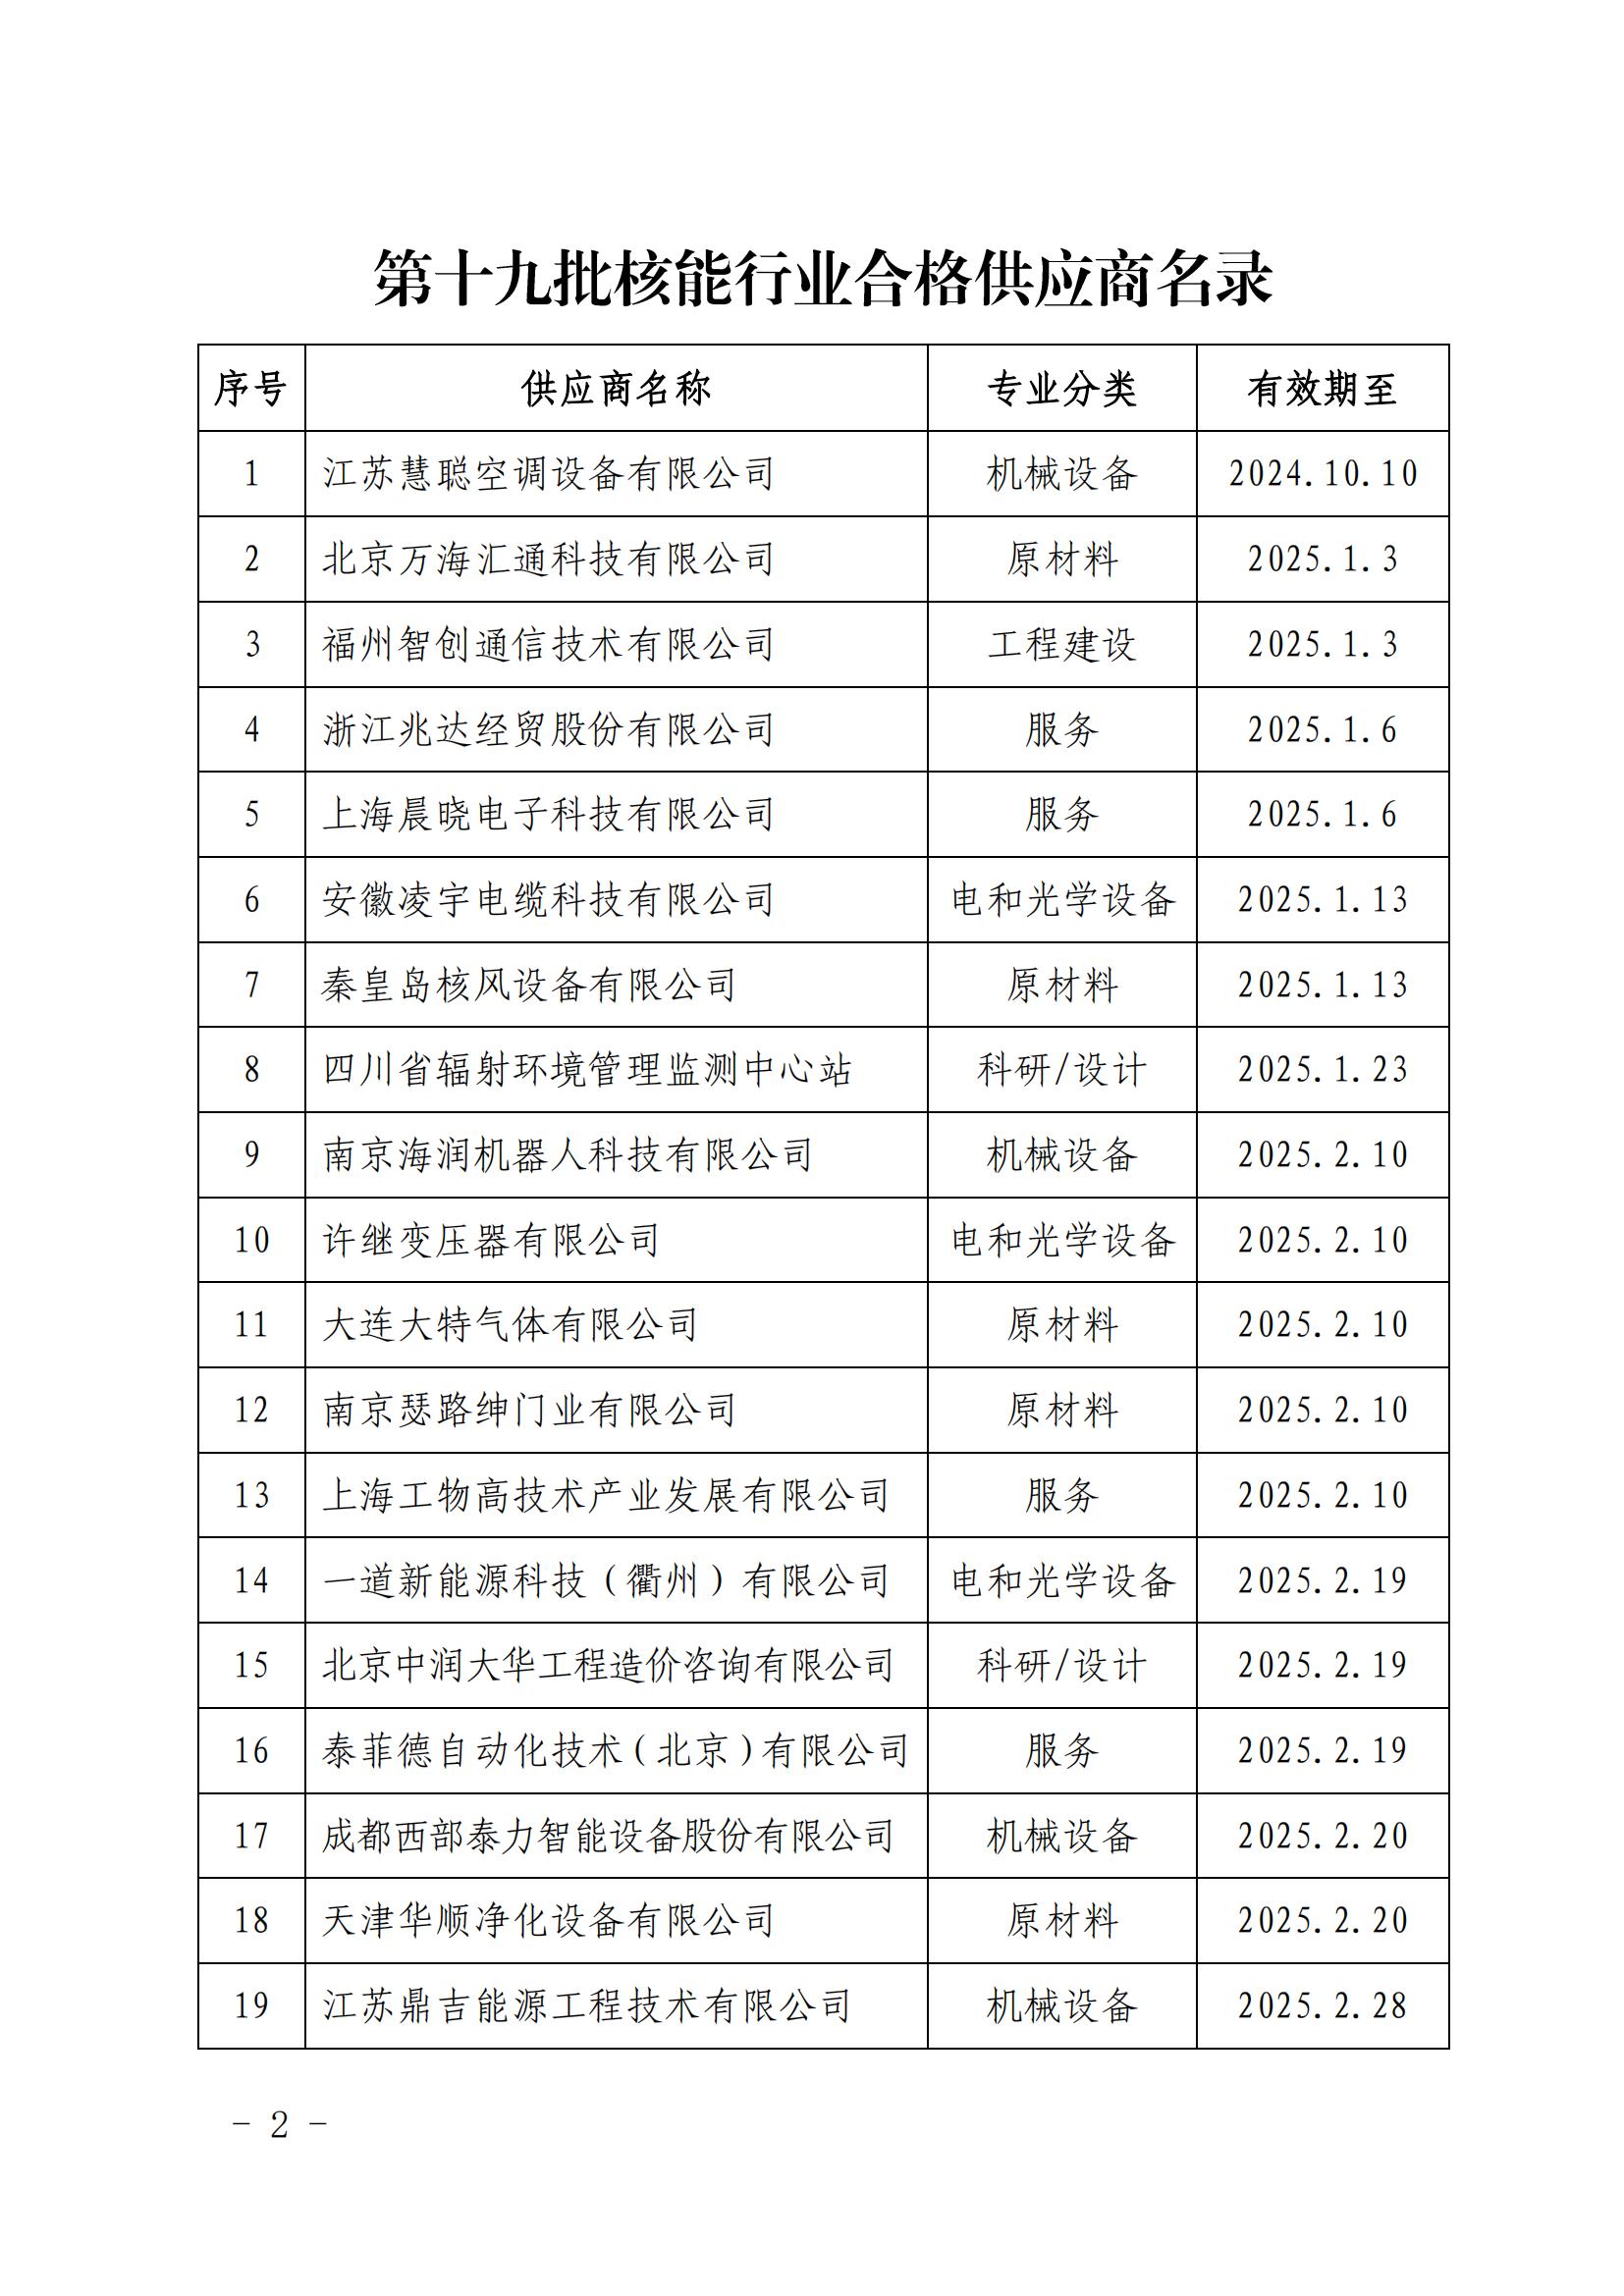 中国核能行业协会关于发布第十九批核能行业合格供应商名录的公告_01.jpg